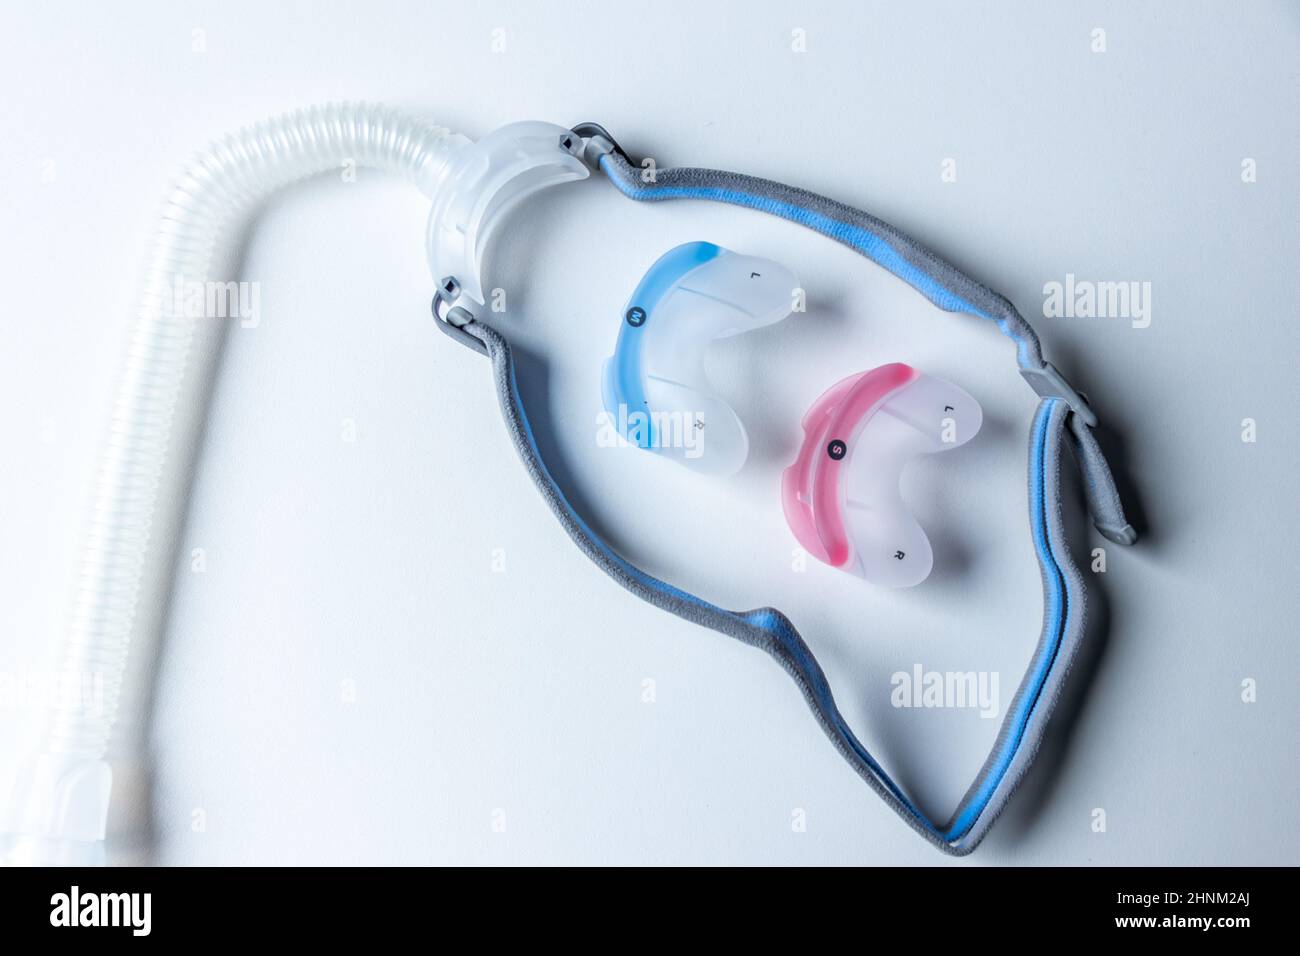 CPAP-Maske gegen obstruktive Schlafapnoe hilft Patienten Atemschutzmaske Kopfbedeckung Clip für Nase und Rachen Atemmedikamente mit cpap-Maschine gegen Schnarchen und Schlafstörungen leichter atmen Stockfoto